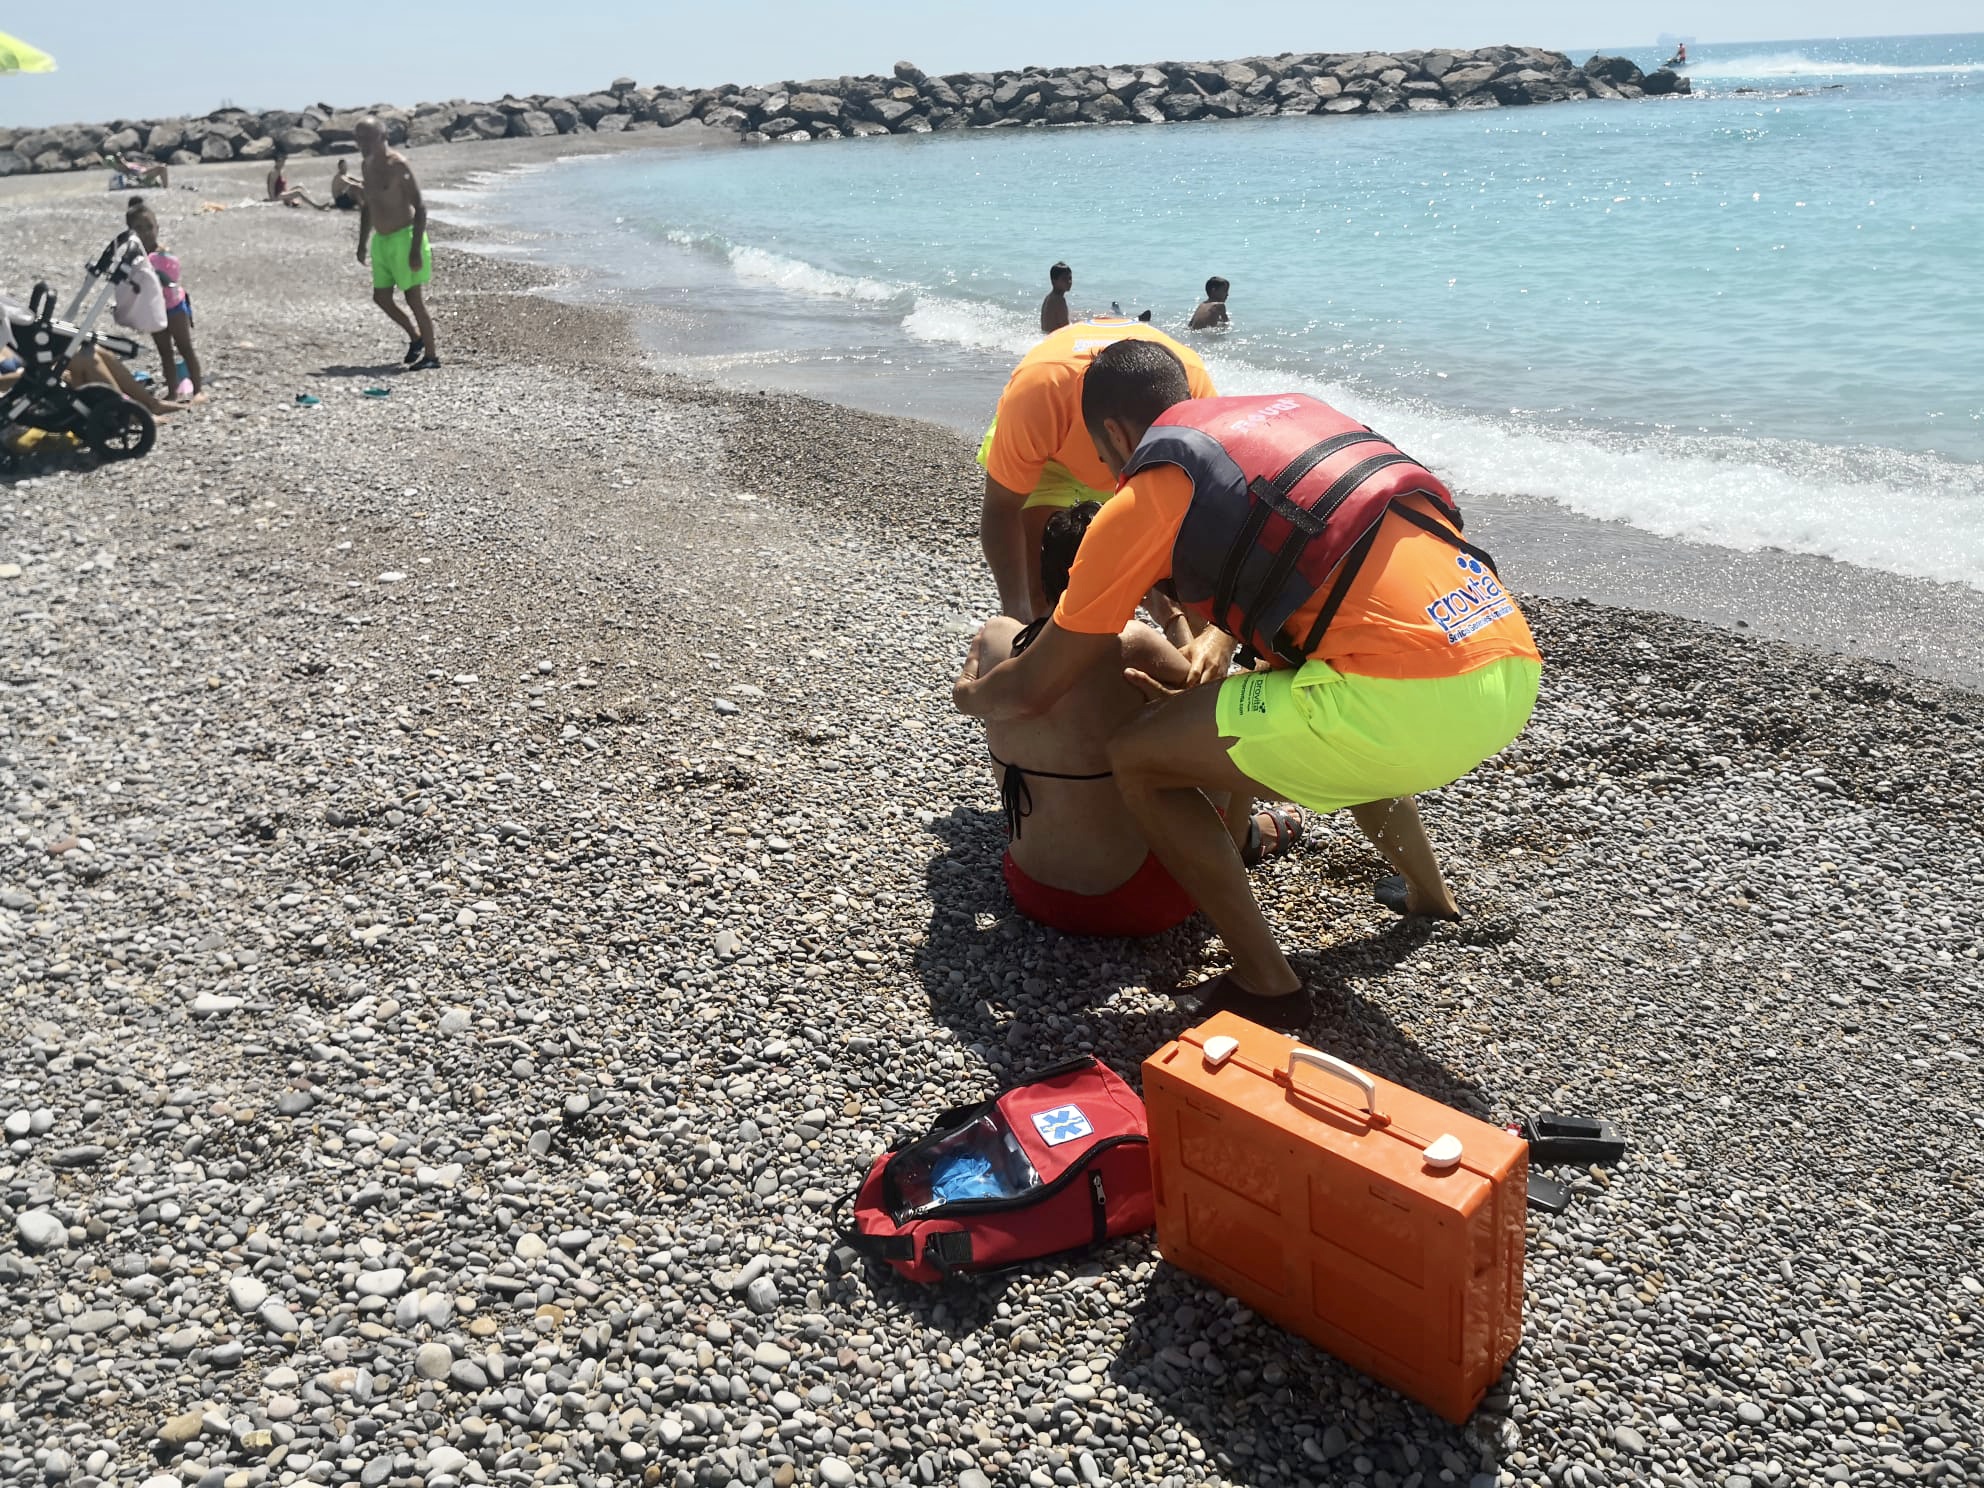 Dos minutos de rescate en el simulacro de la playa de Almassora